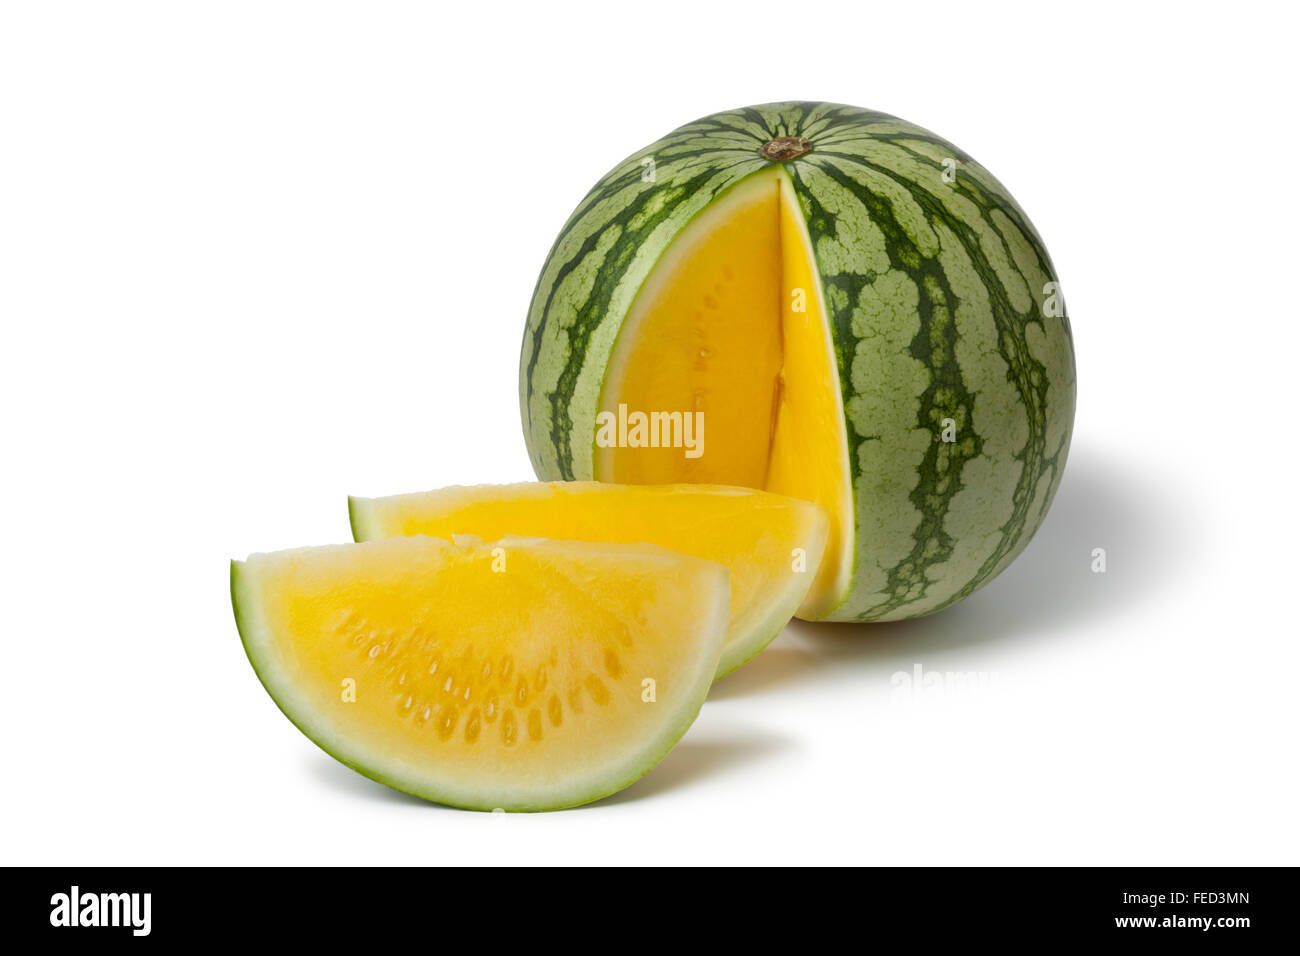 Fresh seedless yellow watermelon on white background Stock Photo